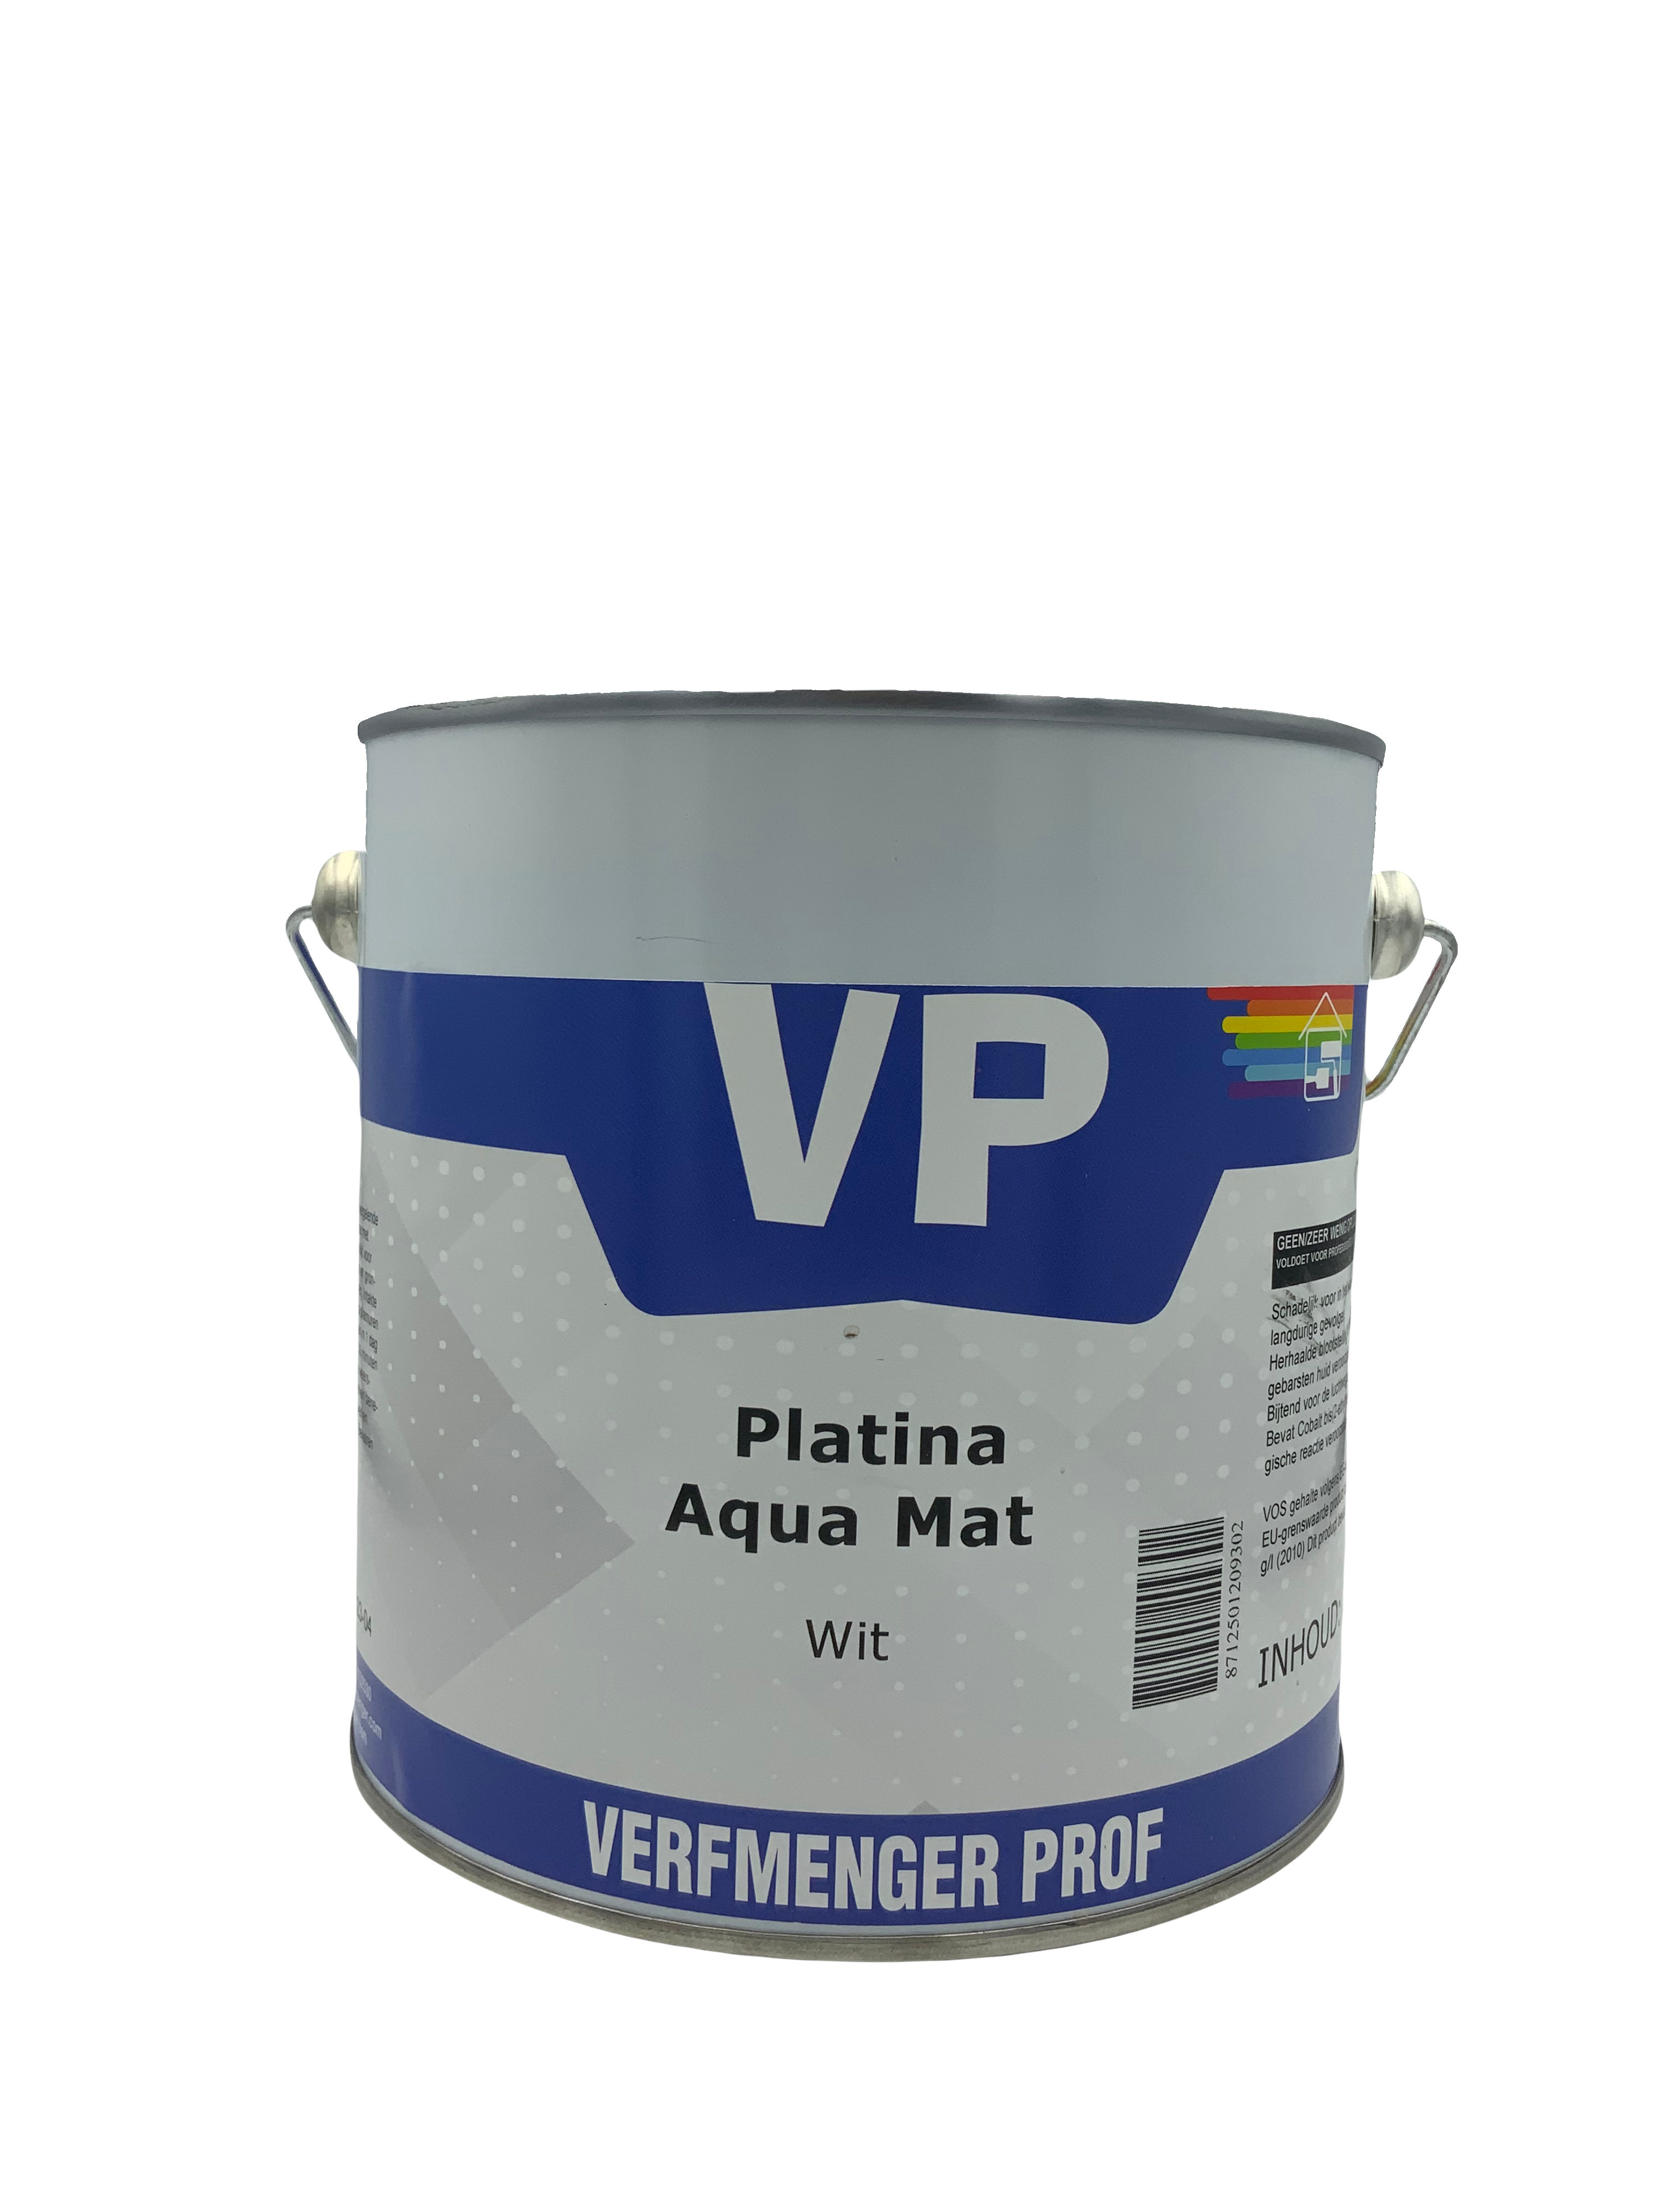 VP Platina Aqua Mat 2.5 liter